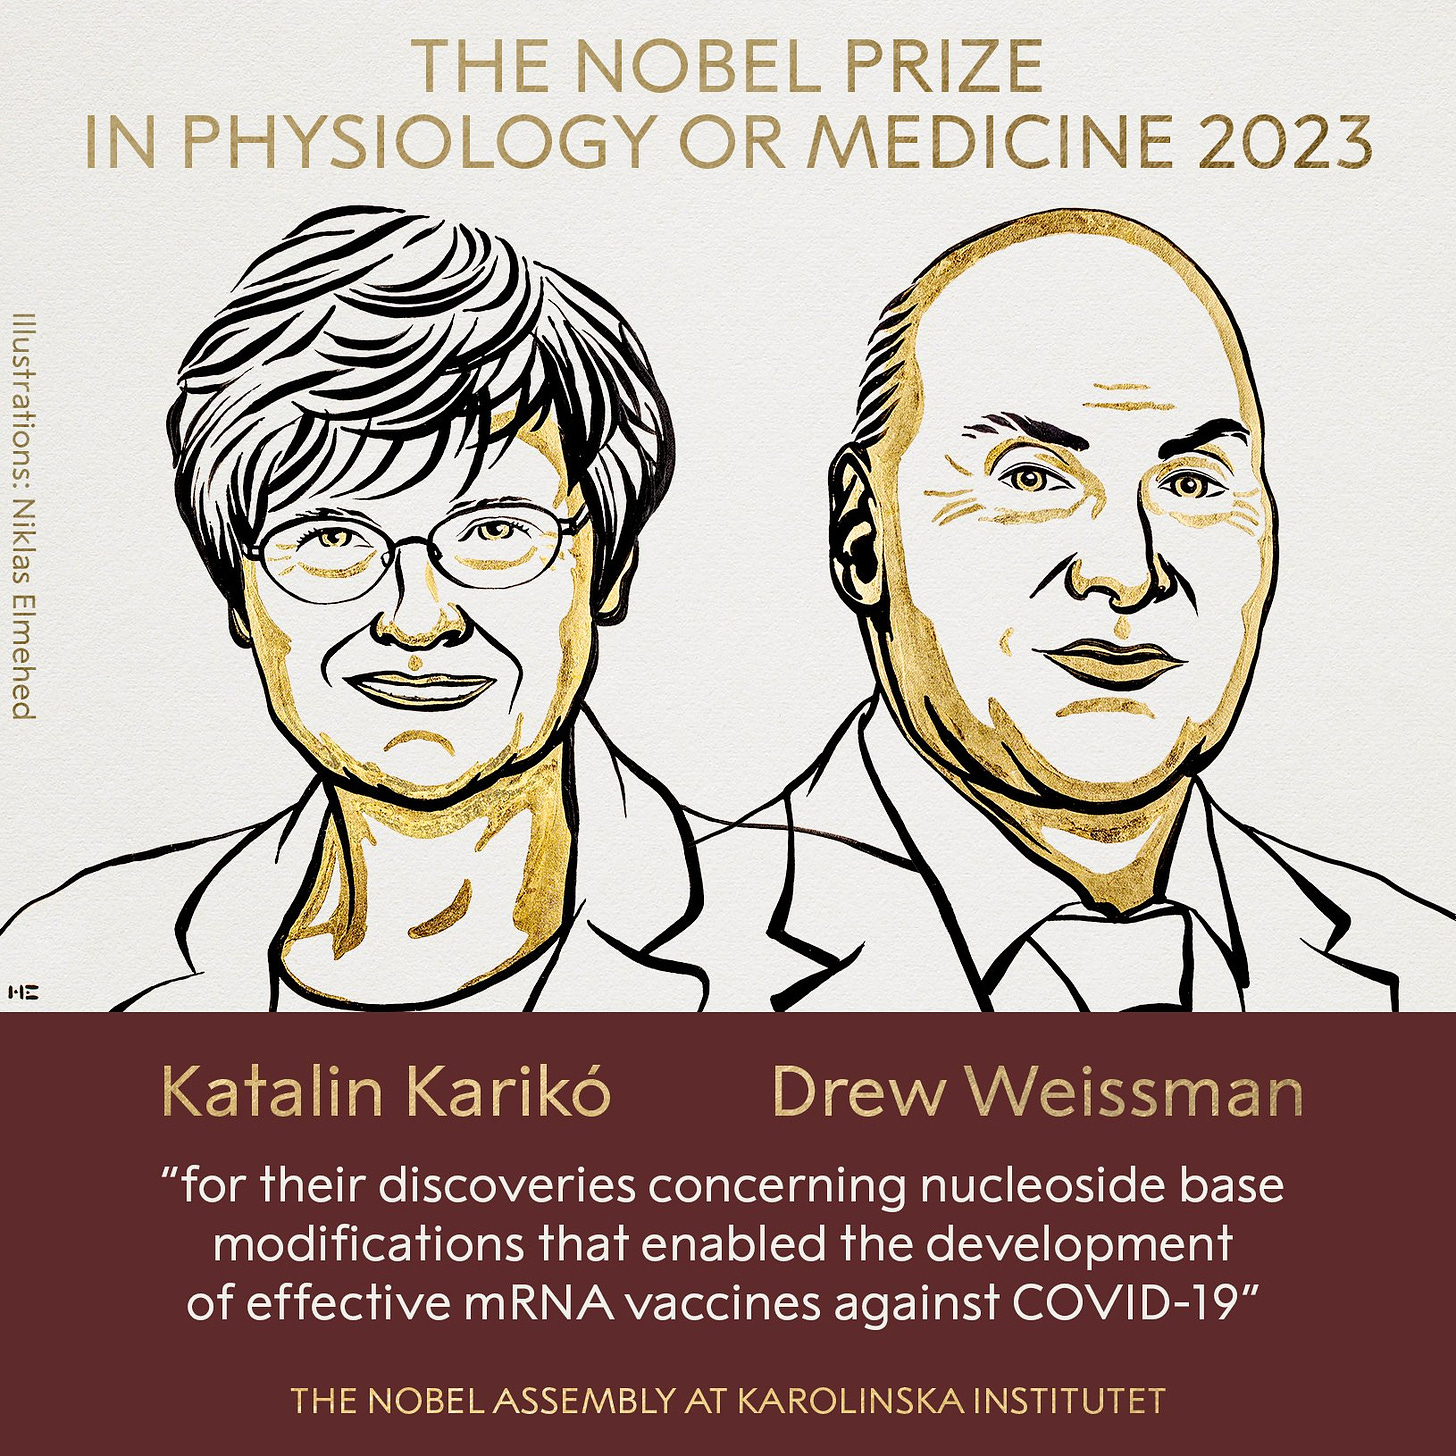 2023 Nobel Fizyoloji veya Tıp Ödülüne layık görülen Katalin Karikó ve Drew Weissman ilüstrasyonu